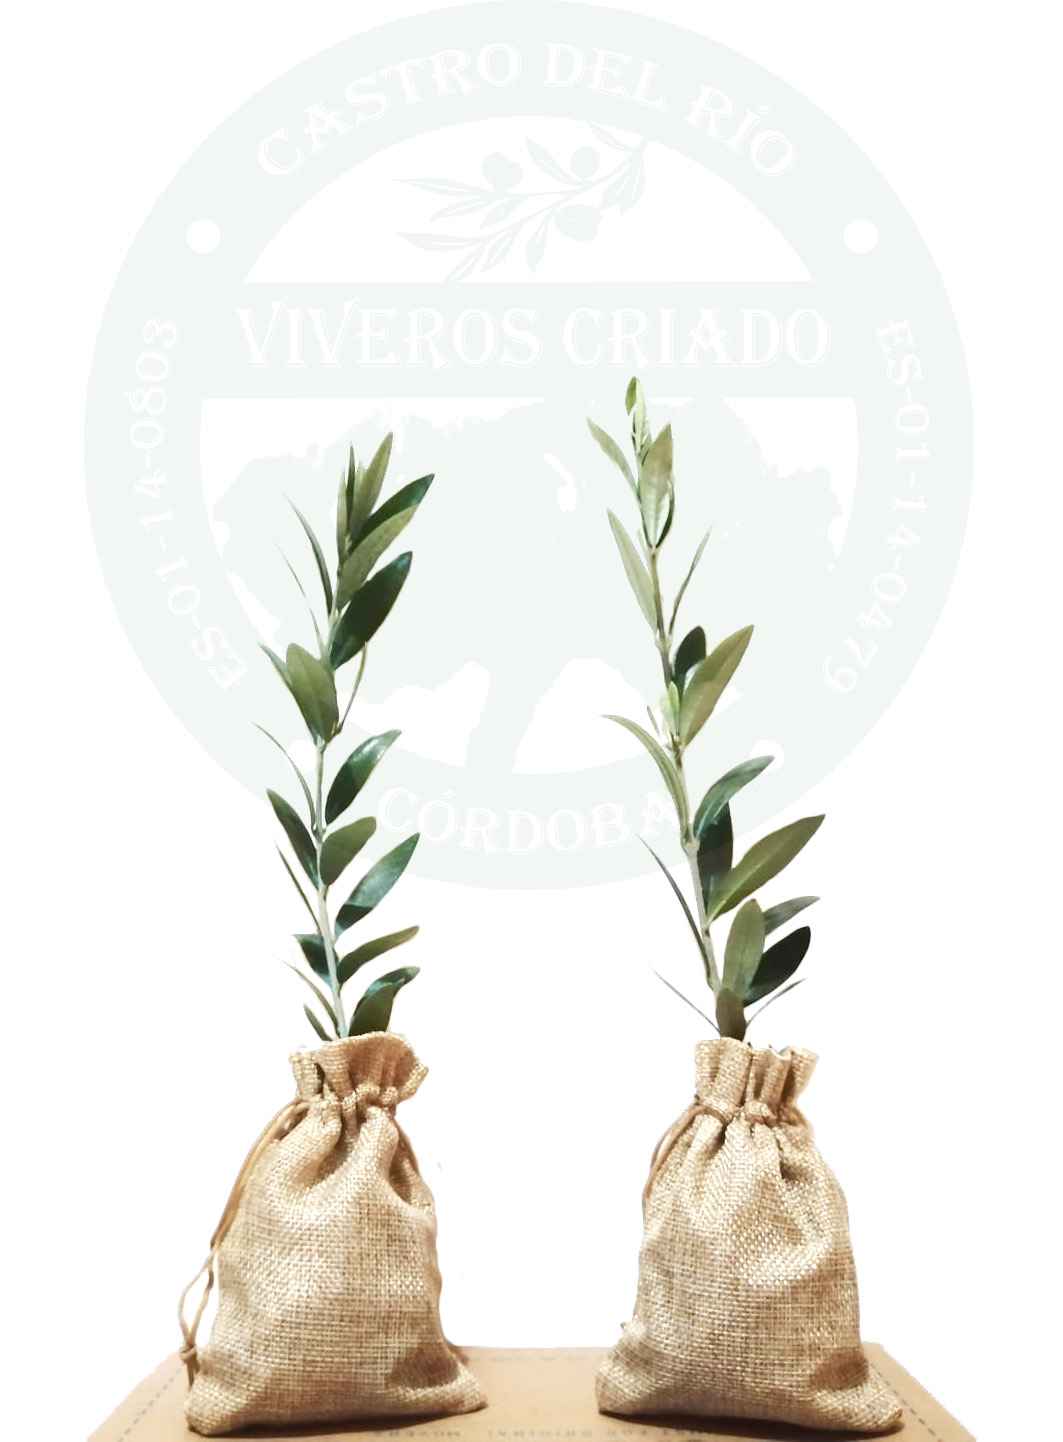 Regalos para invitados Pack de 12 Olivos Olea Europaea Arbequina en saco de saco de yute Sin tarjeta Árboles pequeños naturales para plantar 